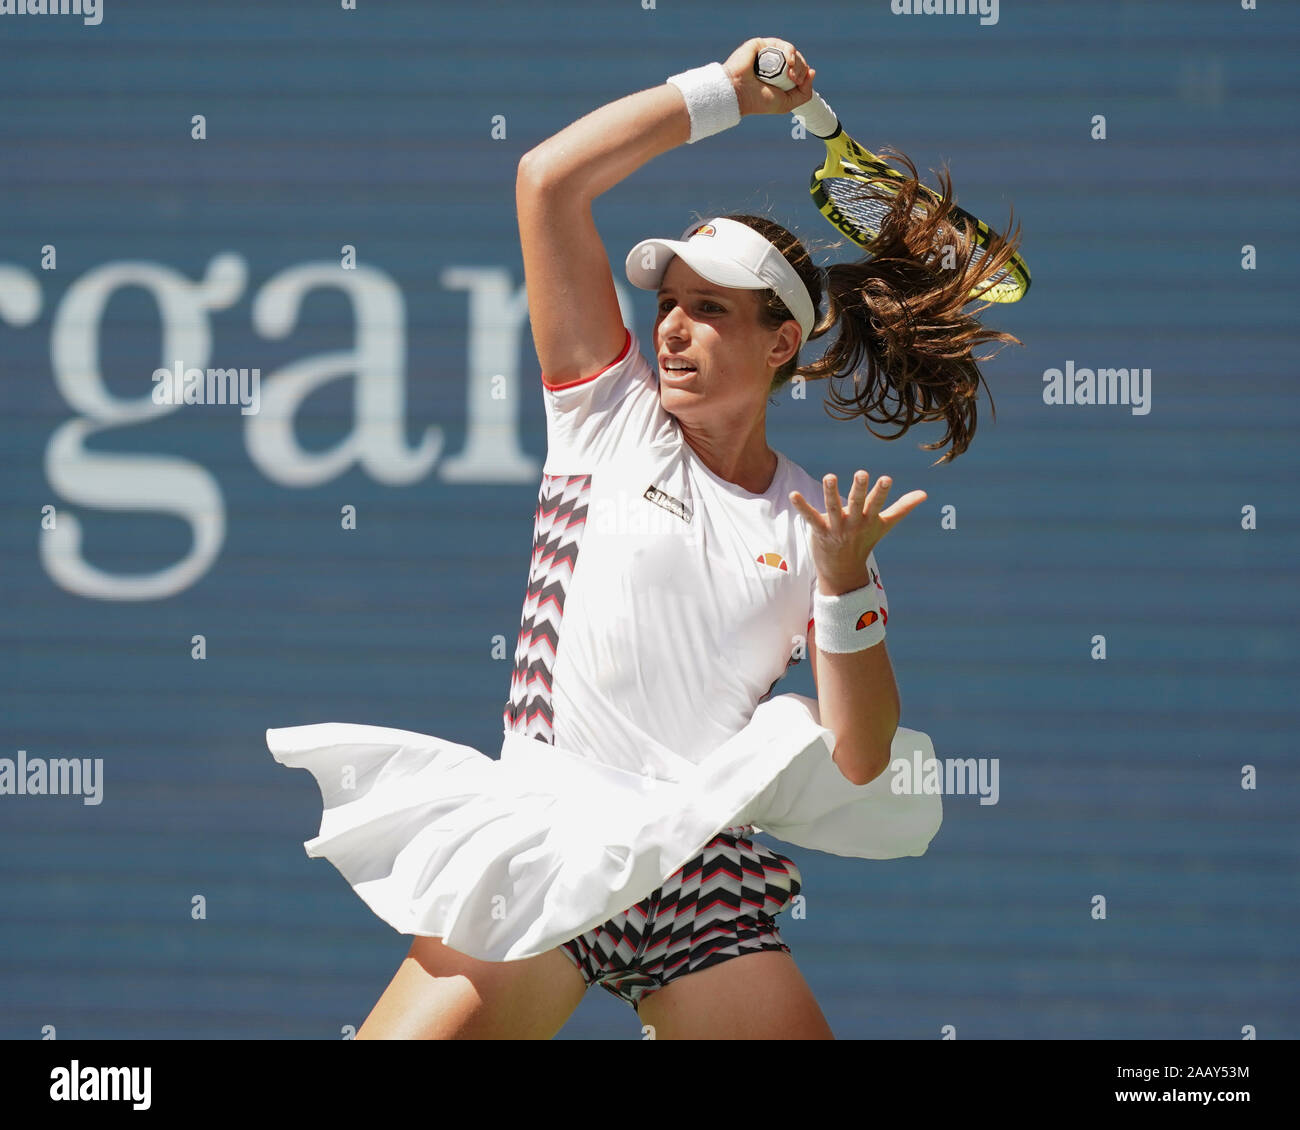 Joueur de tennis britannique Johanna Konta swinging racket en coup droit motion pendant le tournoi de tennis de l'US Open 2019, New York City, New York State, USA Banque D'Images